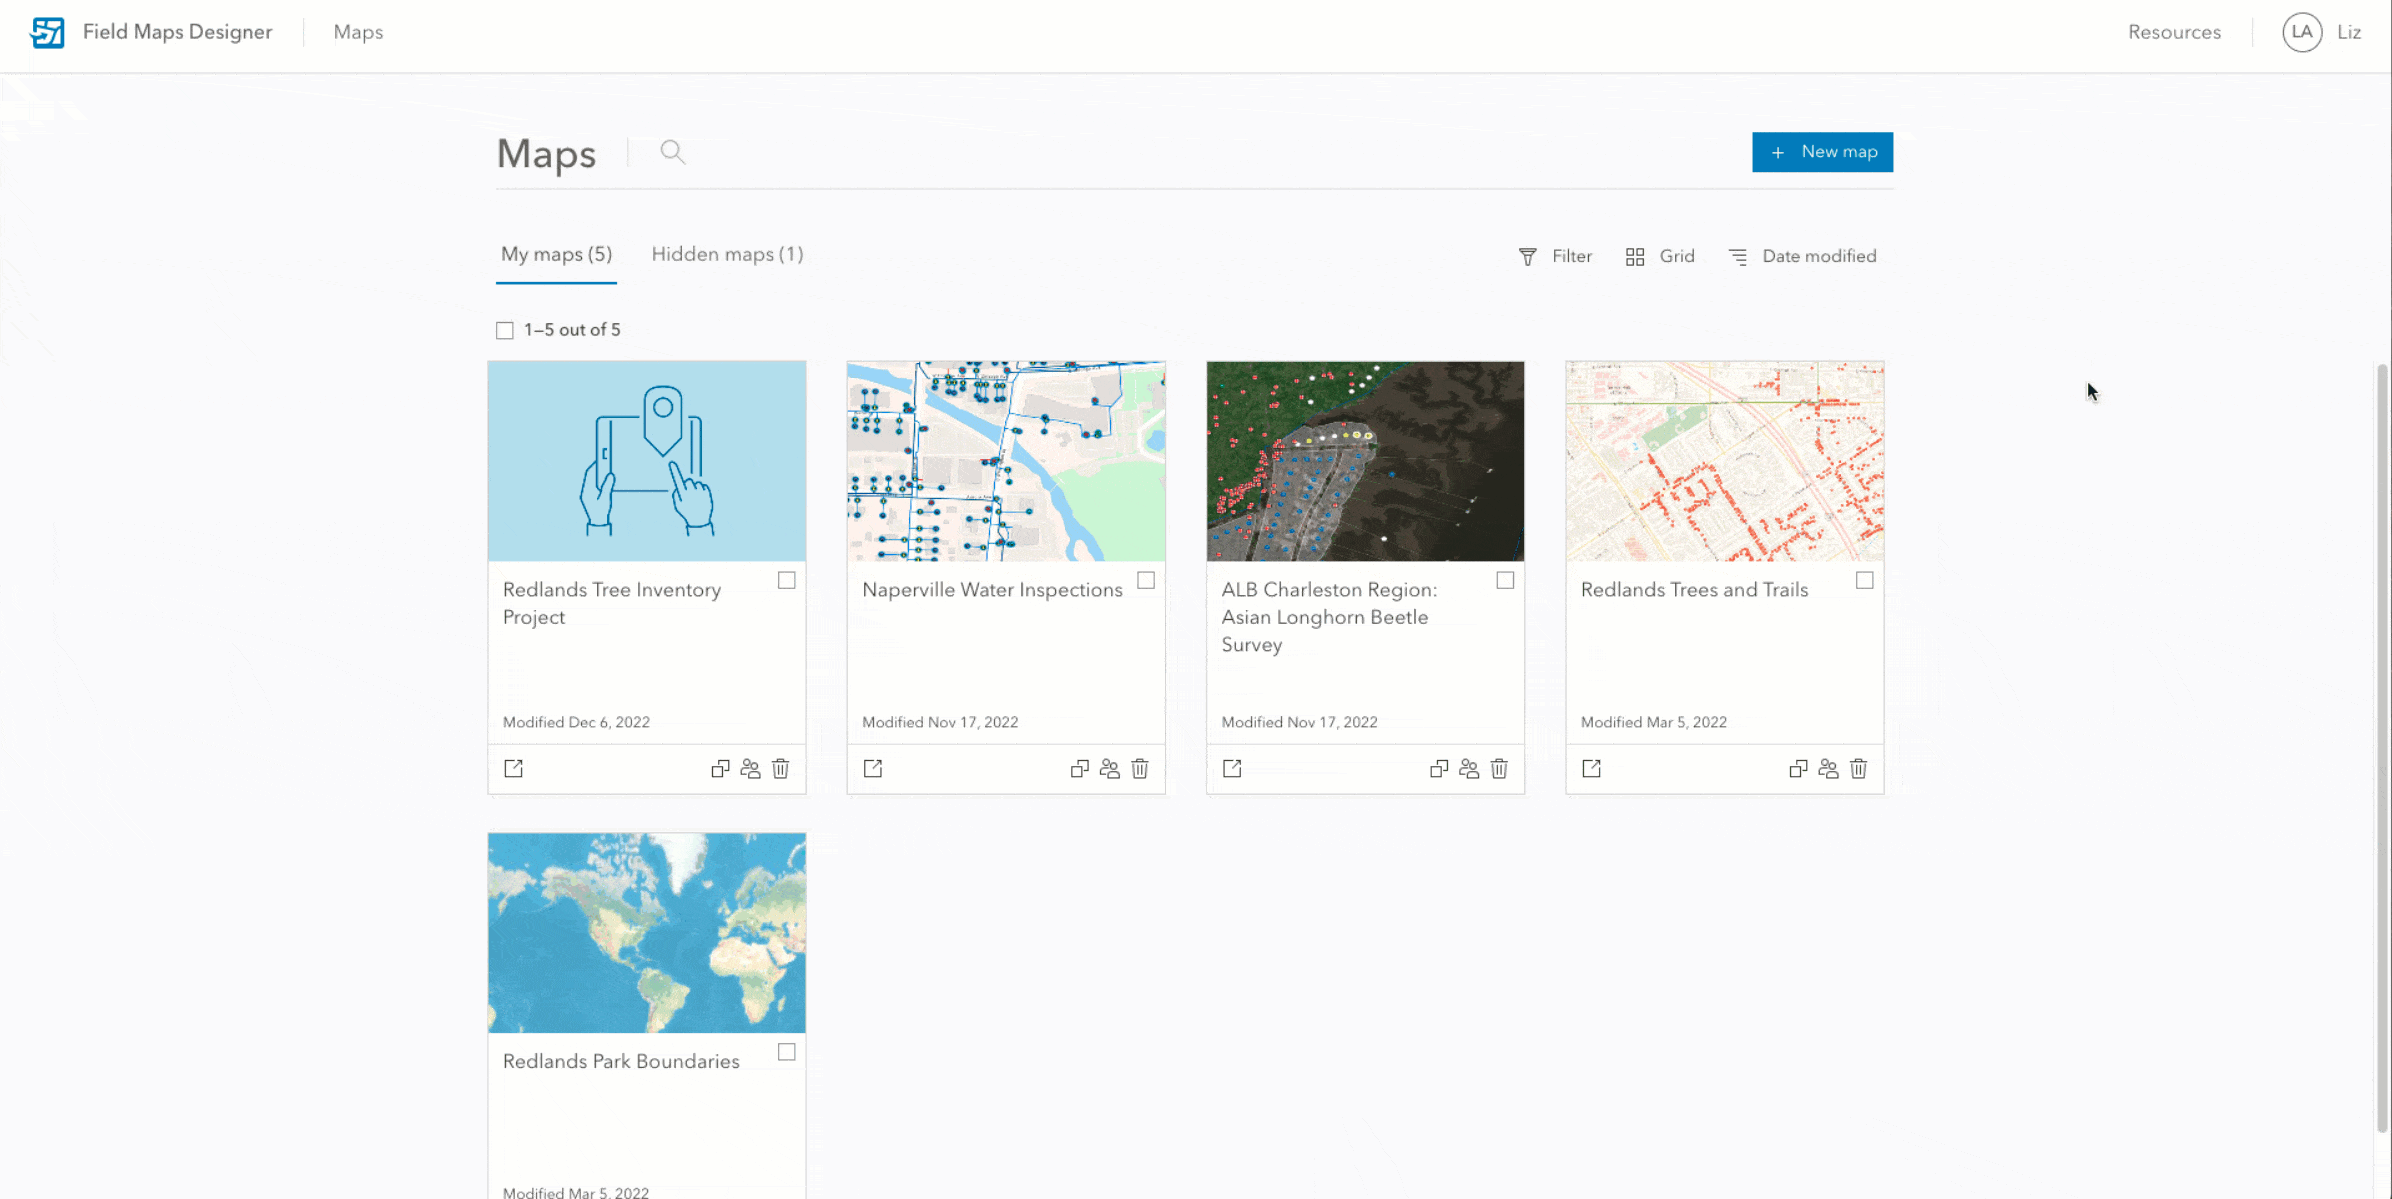 Field Maps Designer new map workflow